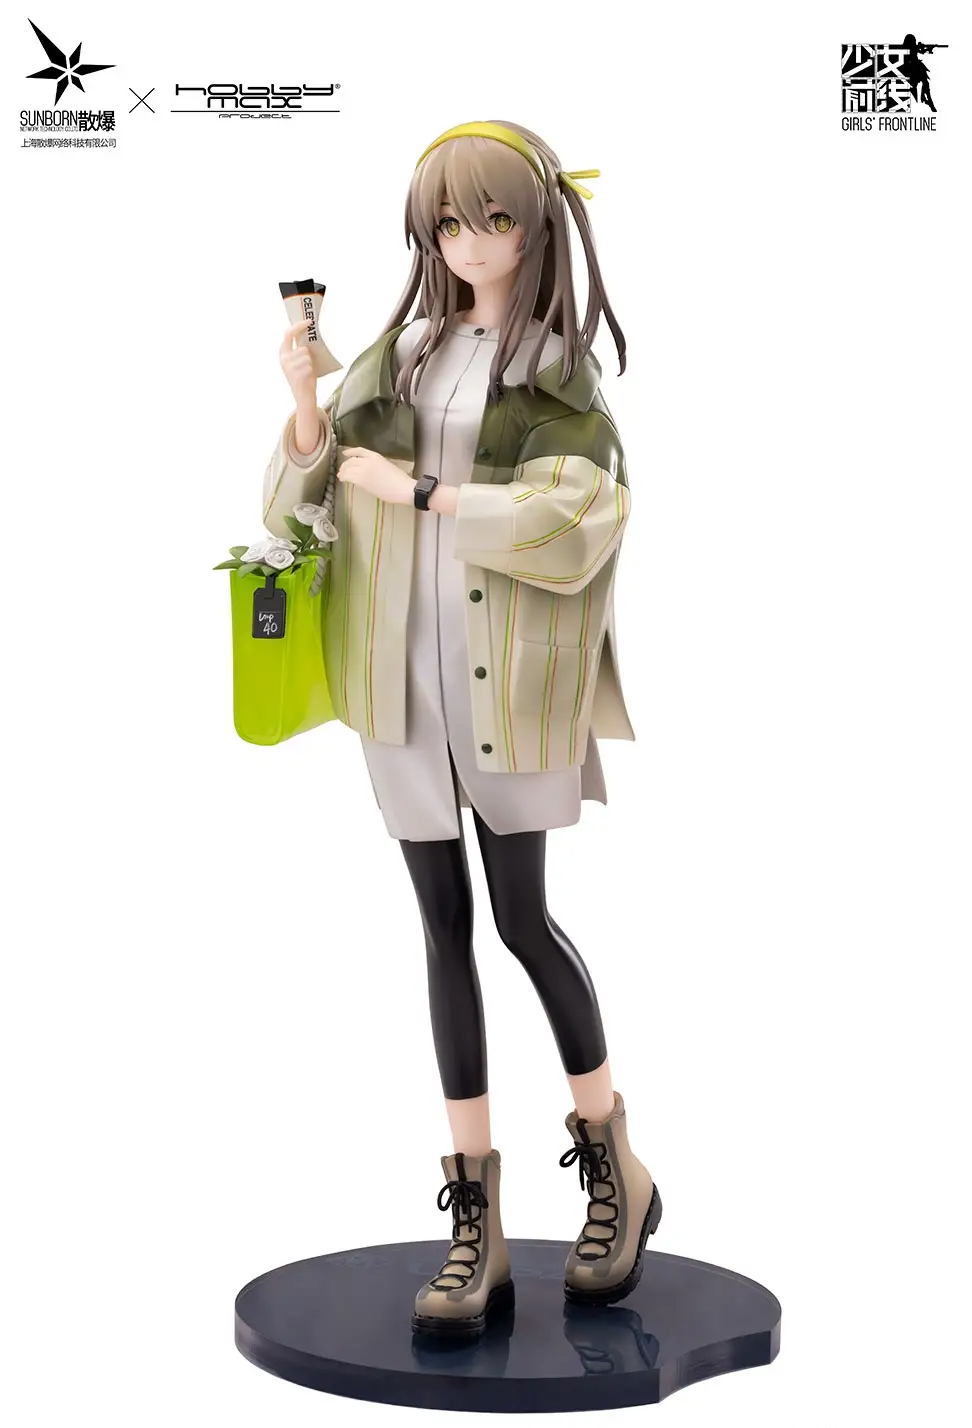 Girls' Frontline 1/7 Scale Pre-Painted Figure: UMP40 Moon River Ver. Hobbymax